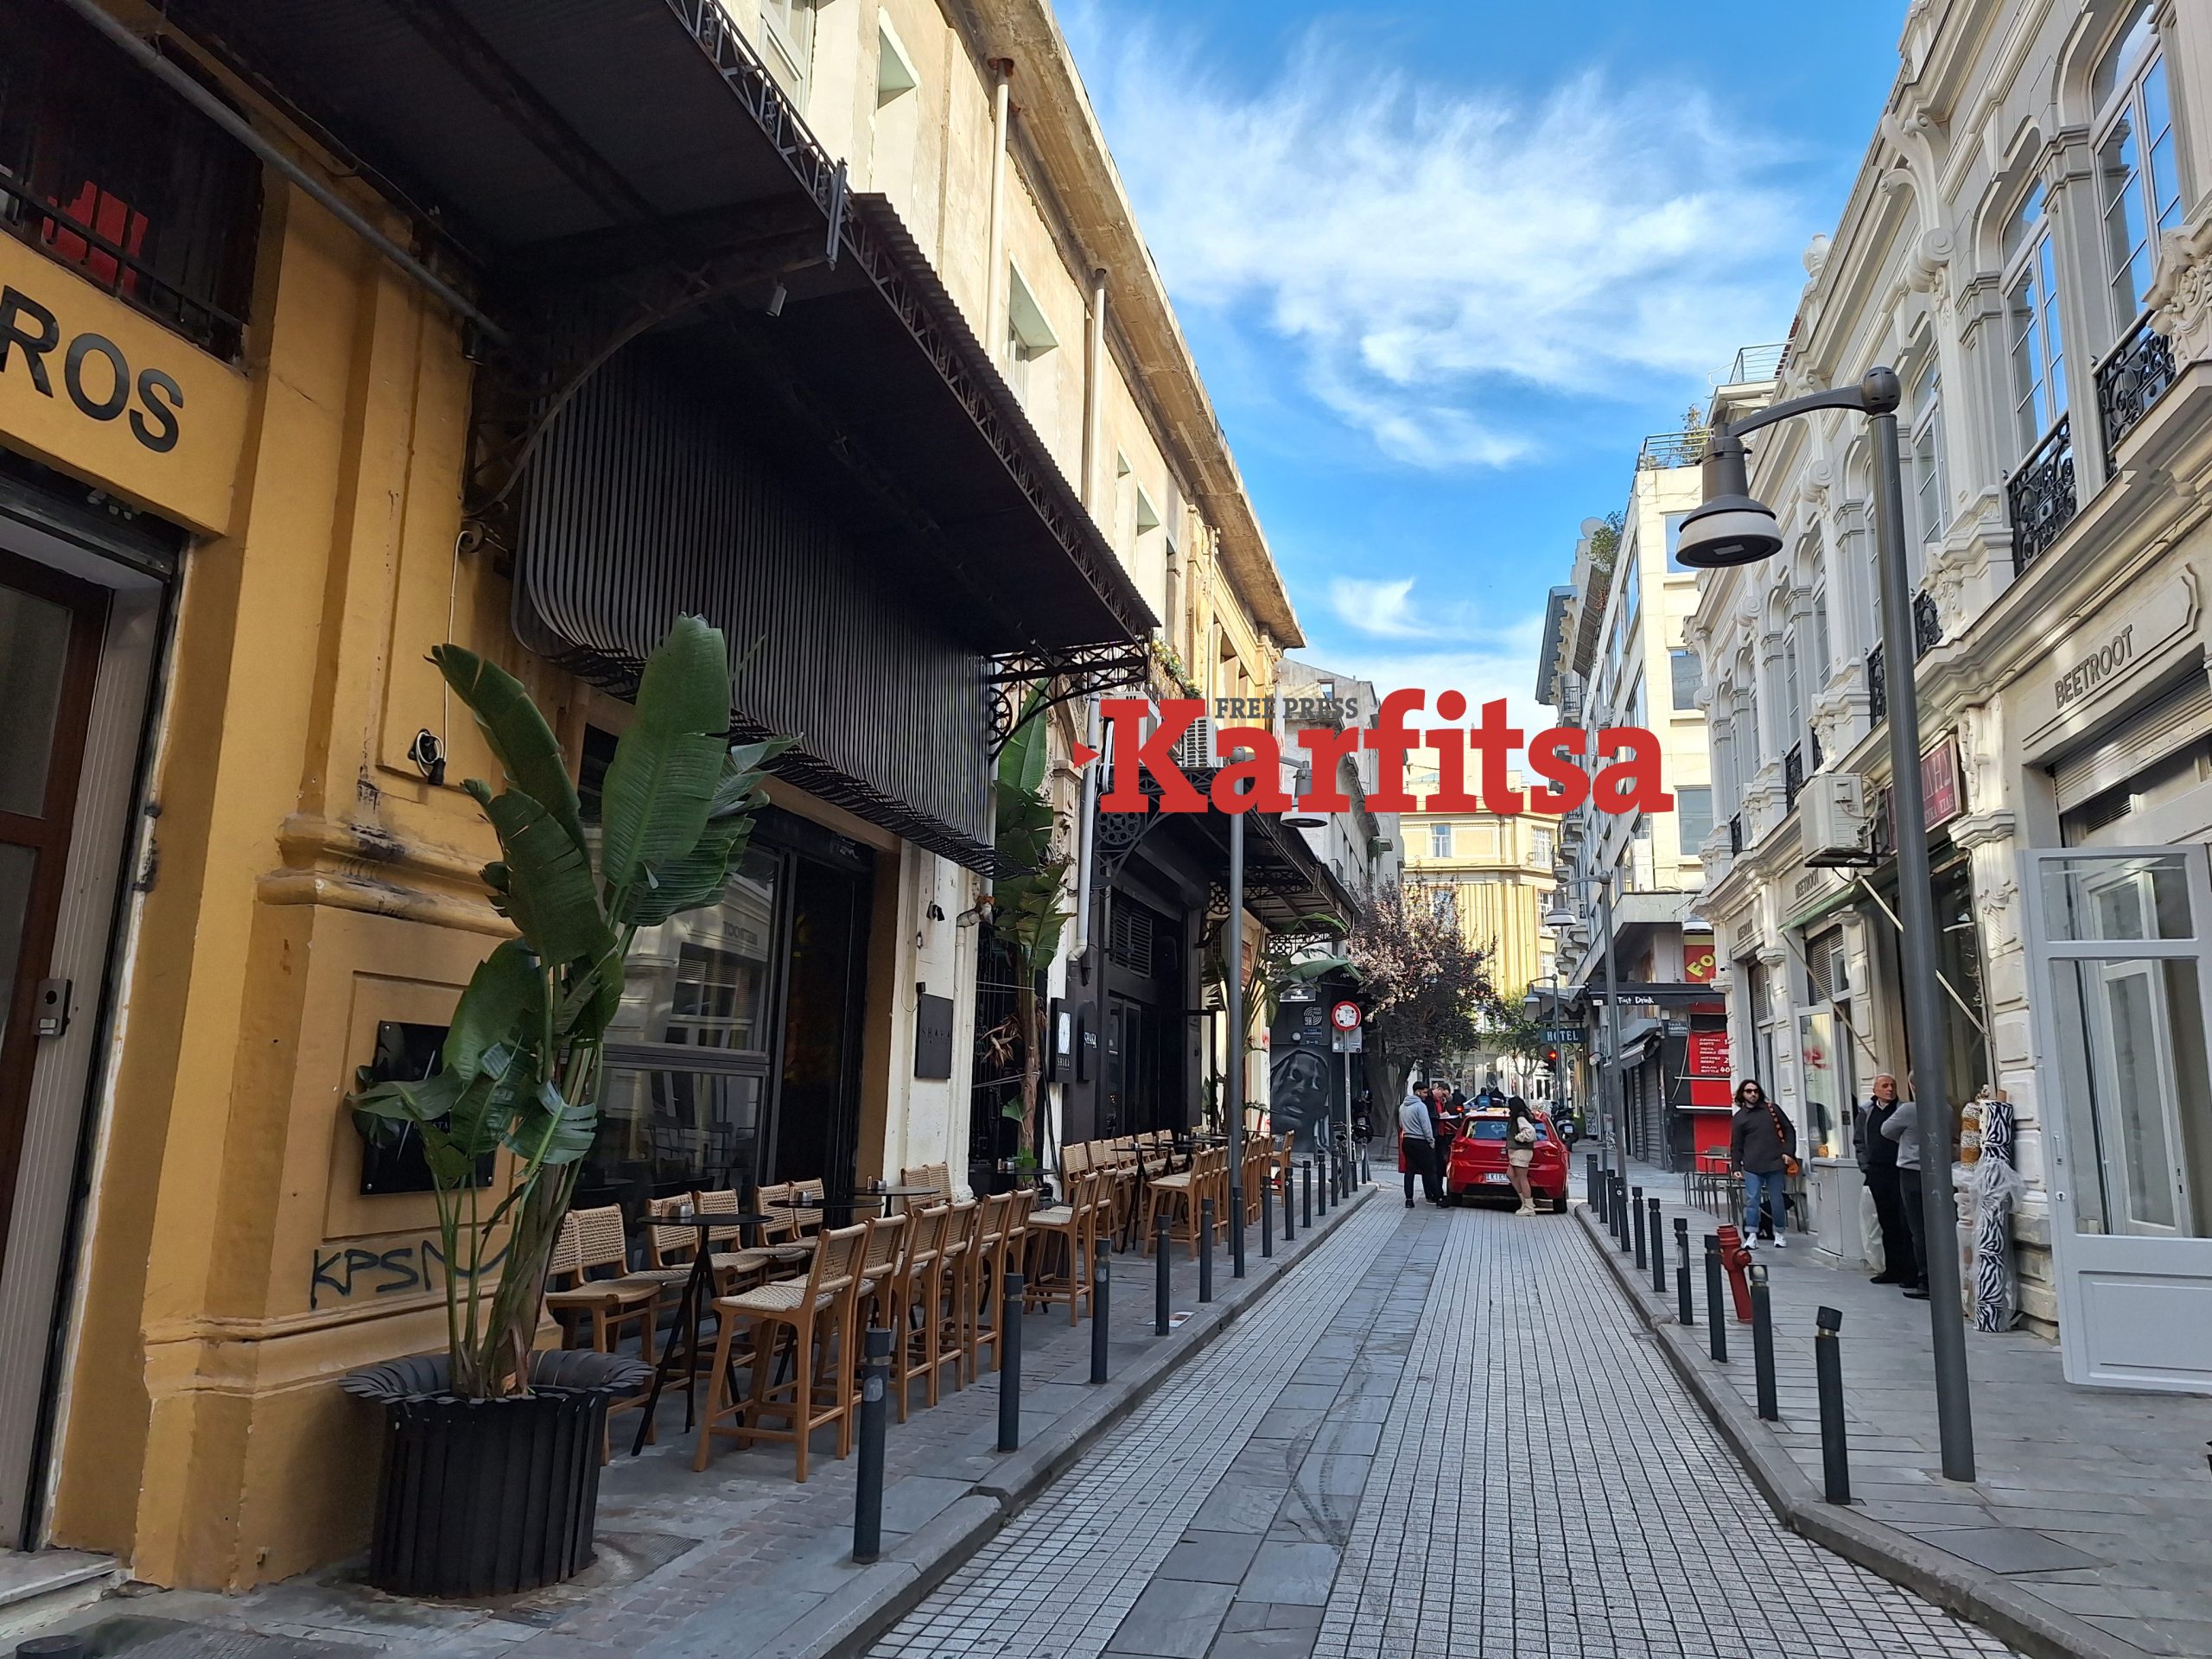 Streets of SKG: Συγγρού – Βαλαωρίτου, από την άνθηση των βιοτεχνιών το 1980 στον κόμβο διασκέδασης και επενδύσεων του σήμερα